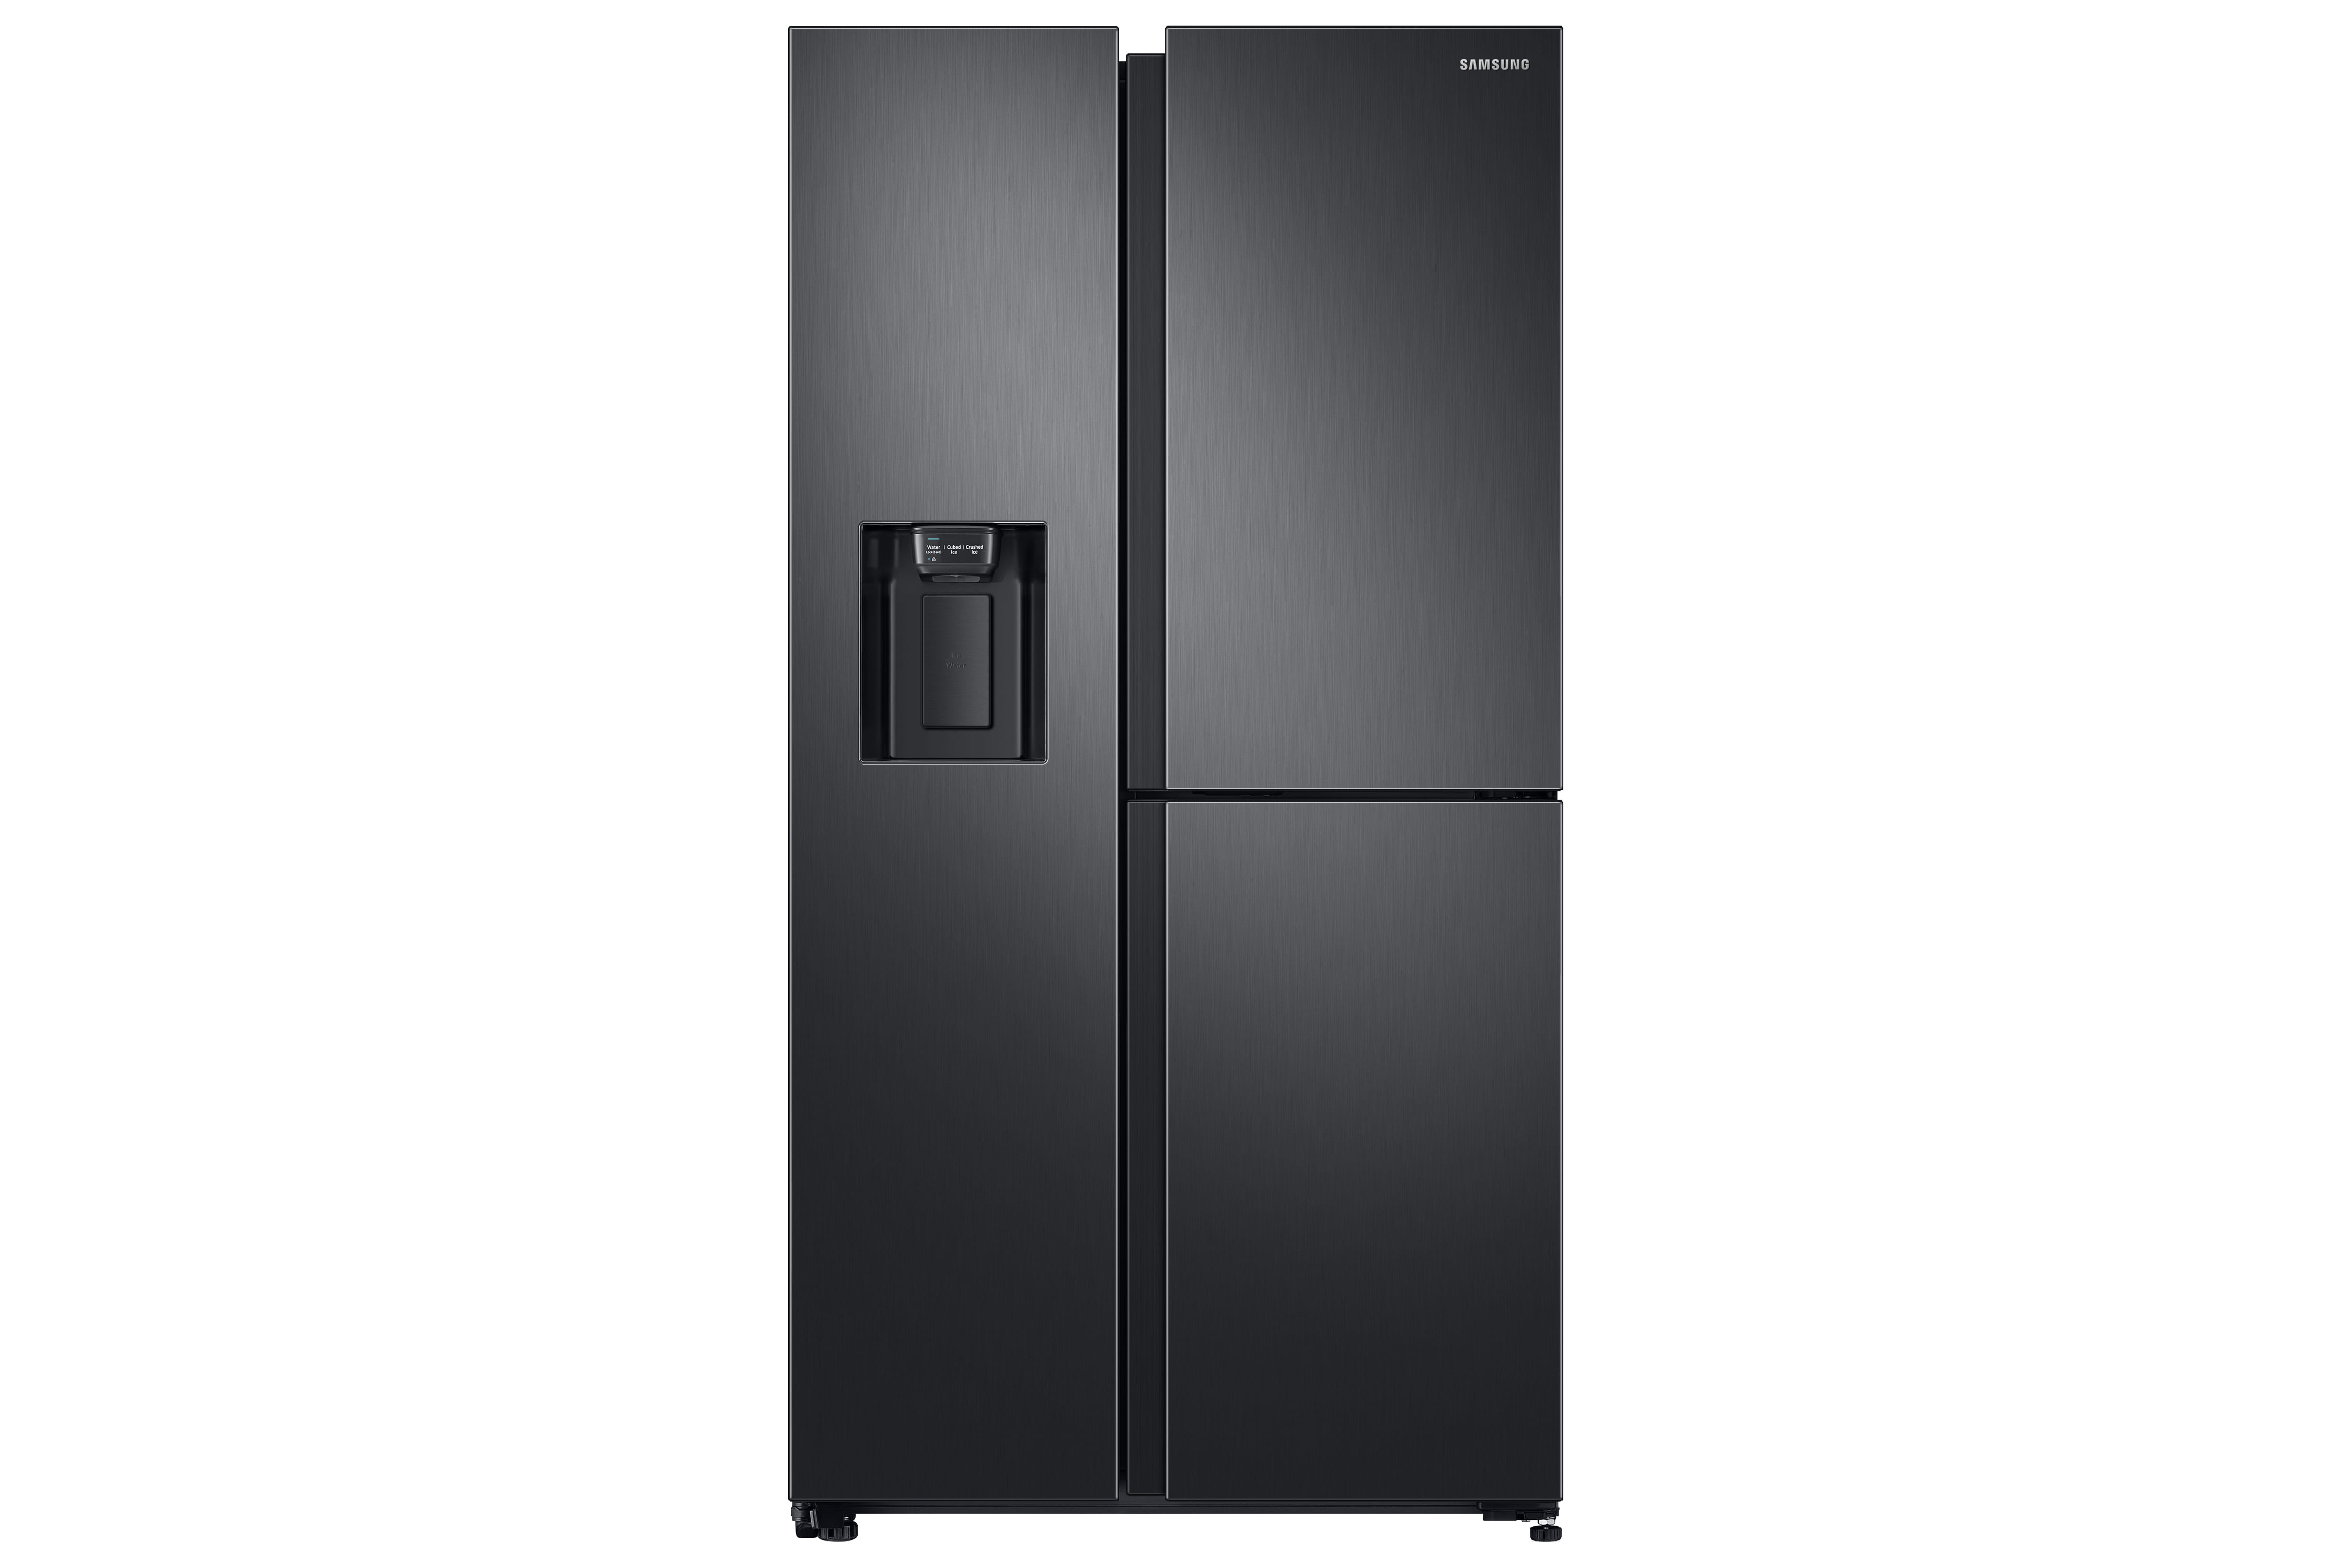 Levántate trampa para Por qué suena tanto tu refrigerador? ¡Te revelamos el misterio! - m360.cl